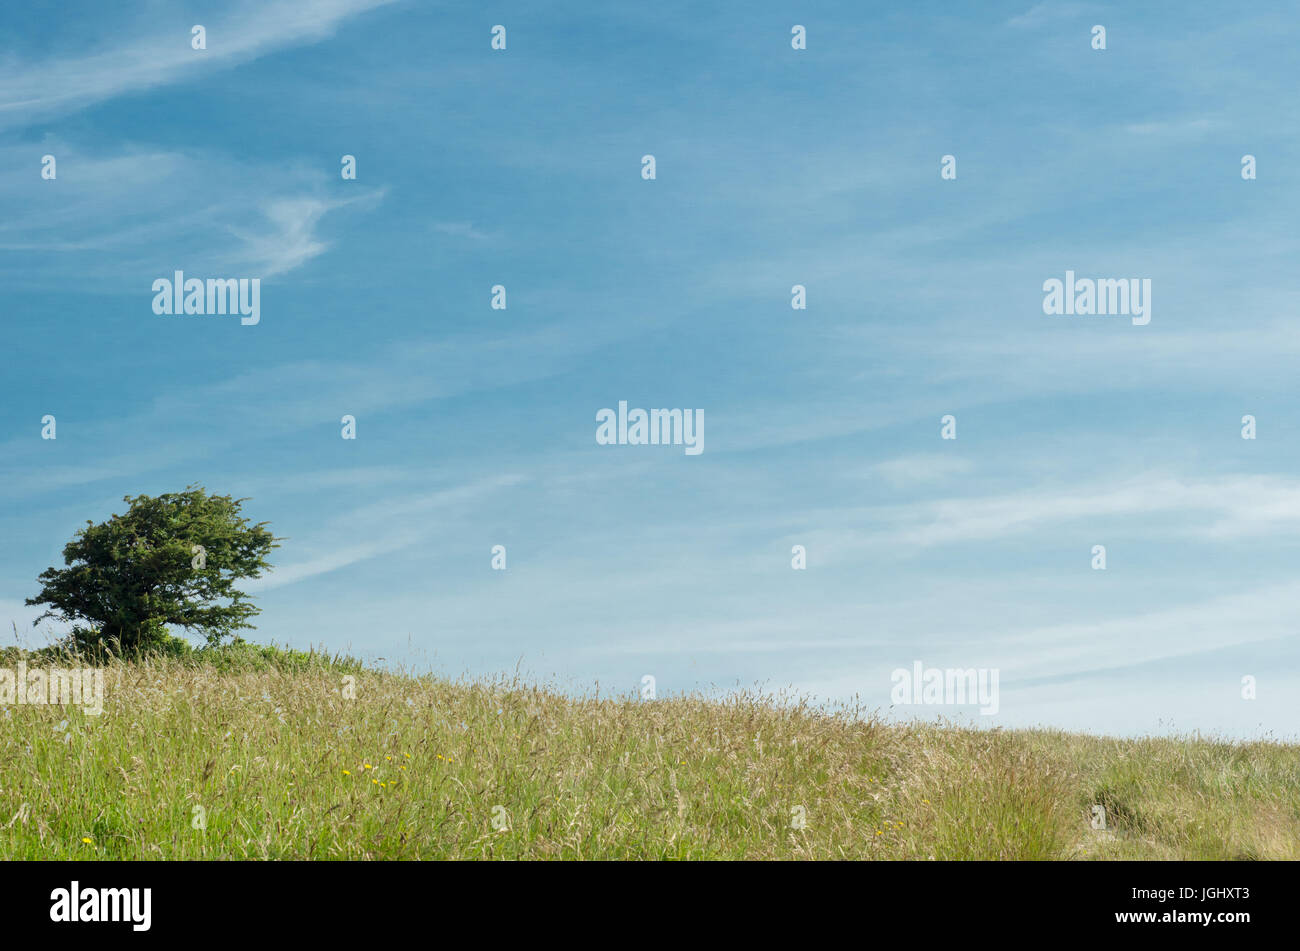 New Scenic 5 posti la natura dello sfondo. Un unico albero su una morbida collina erbosa contro un cielo blu nella campagna inglese. Foto Stock